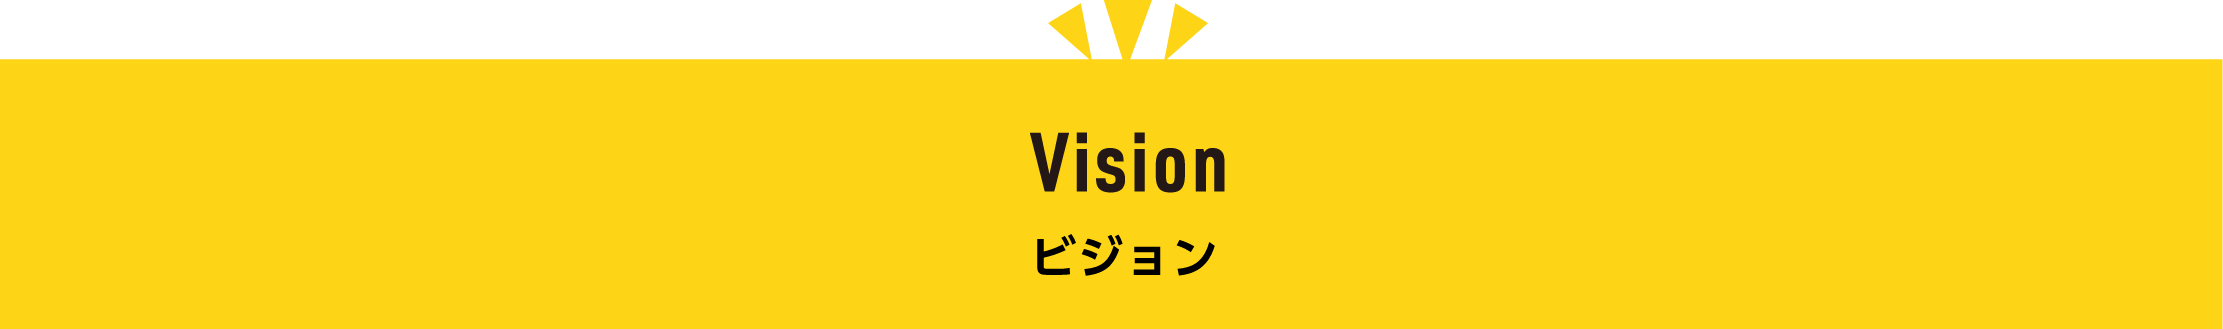 Vision ビジョン